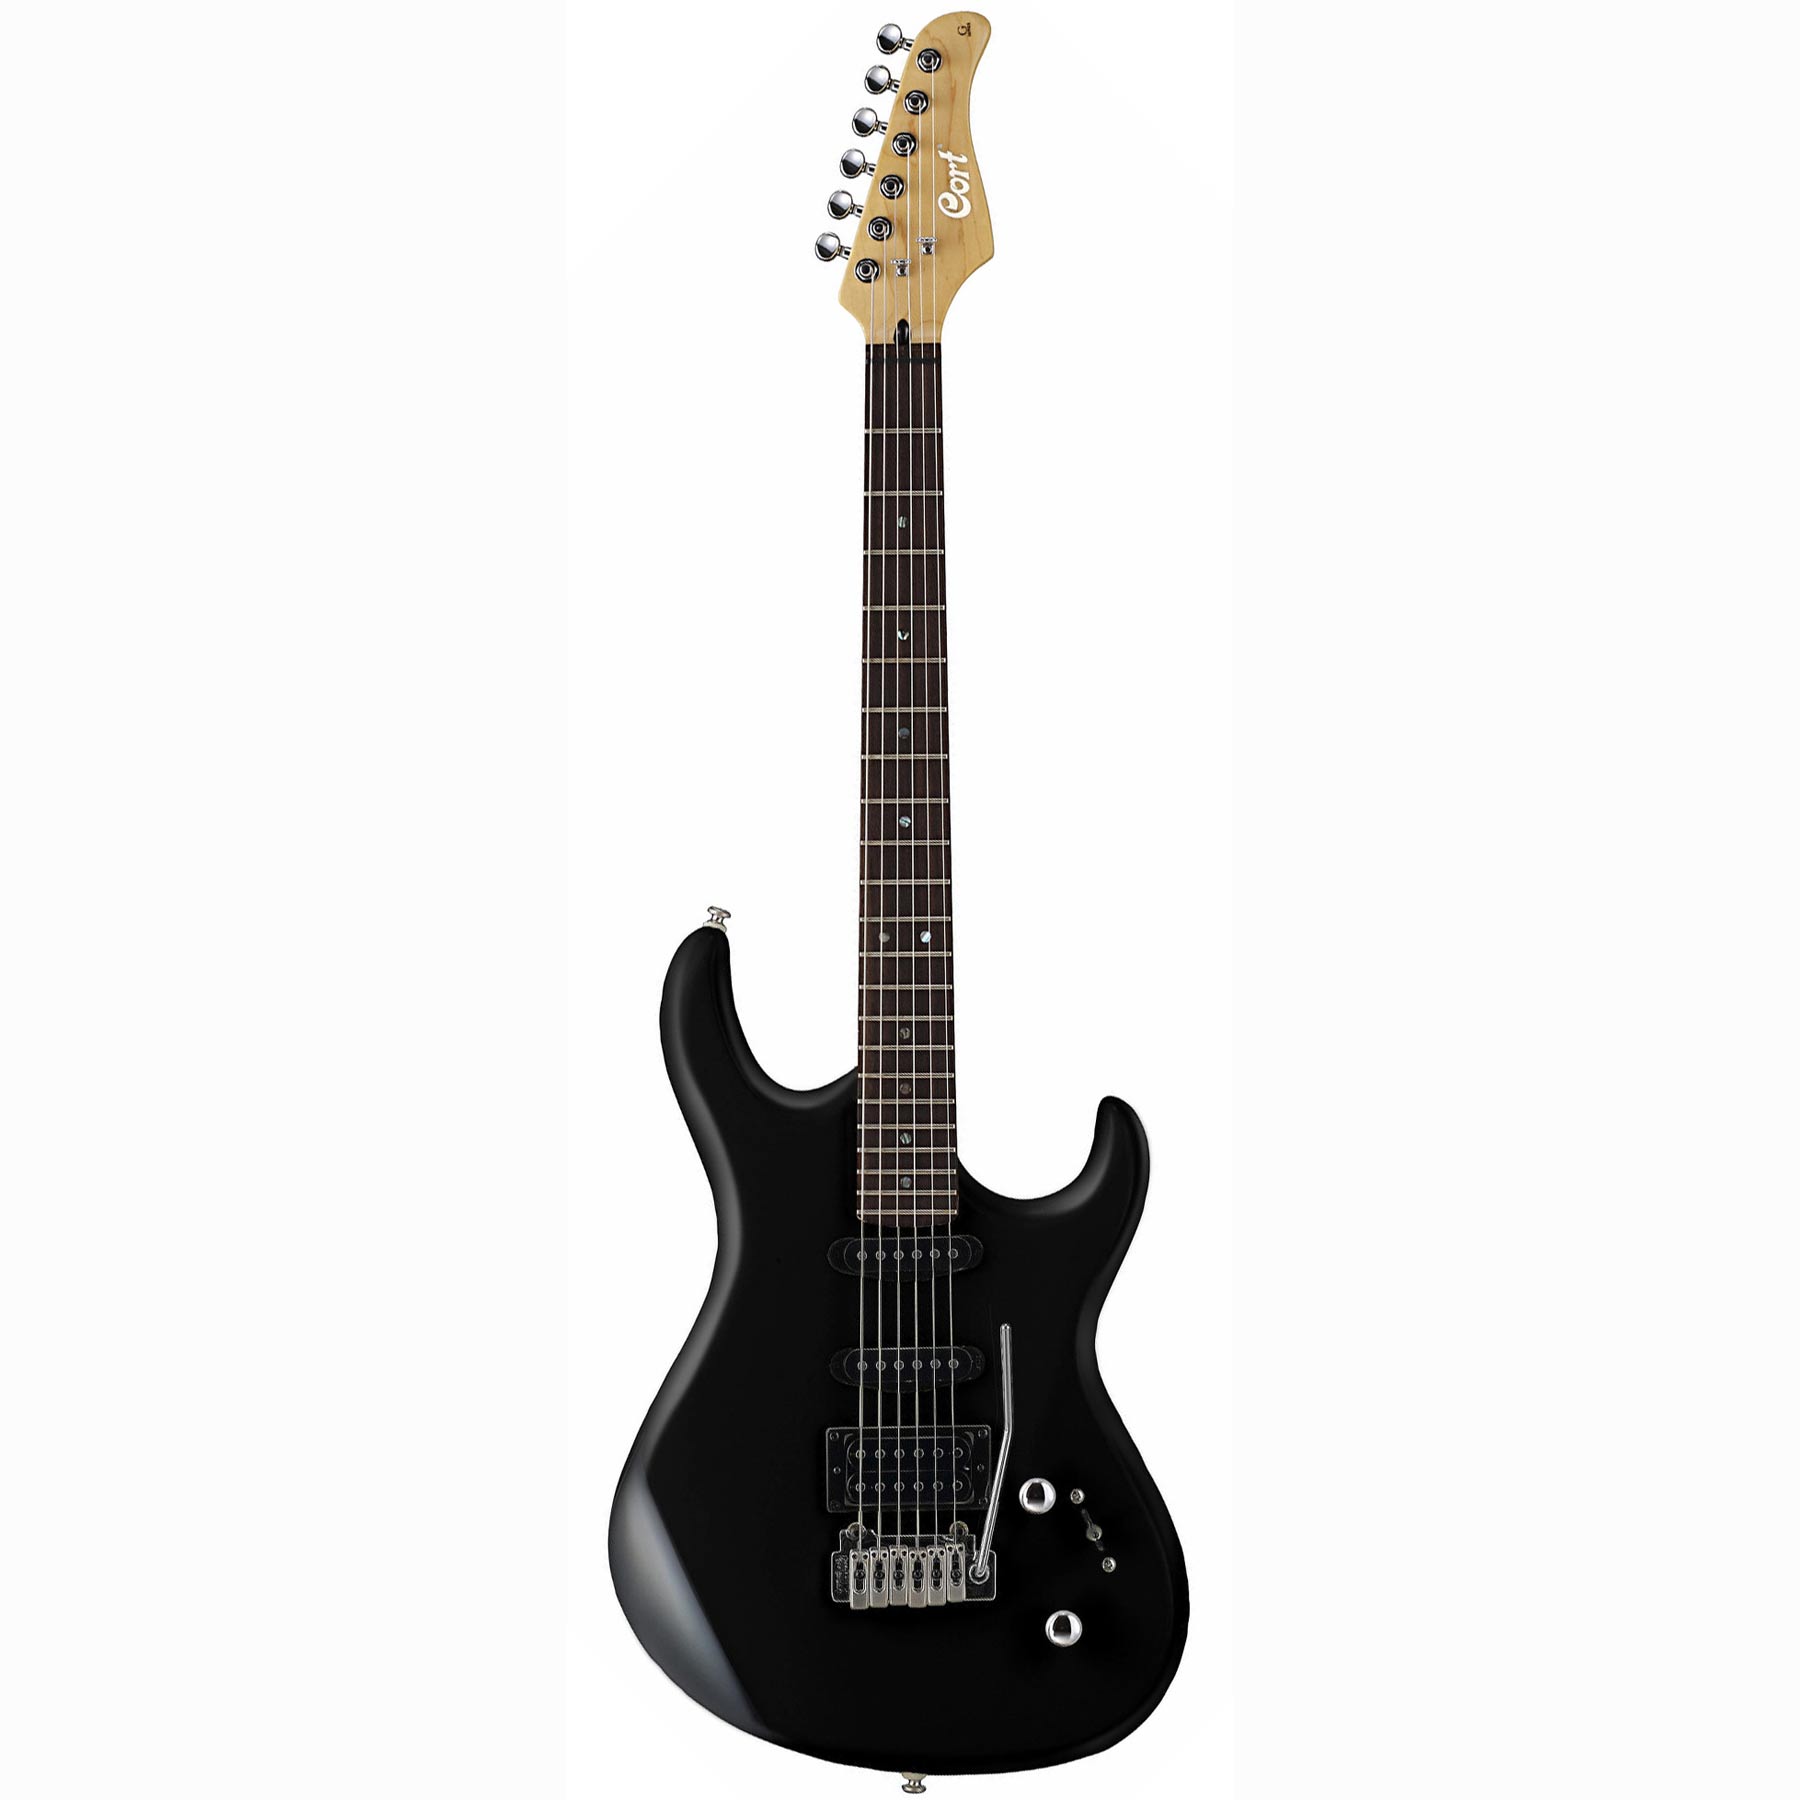 Comprar Guitarra Electrica de iniciacion al mejor precio en Prieto M�sica